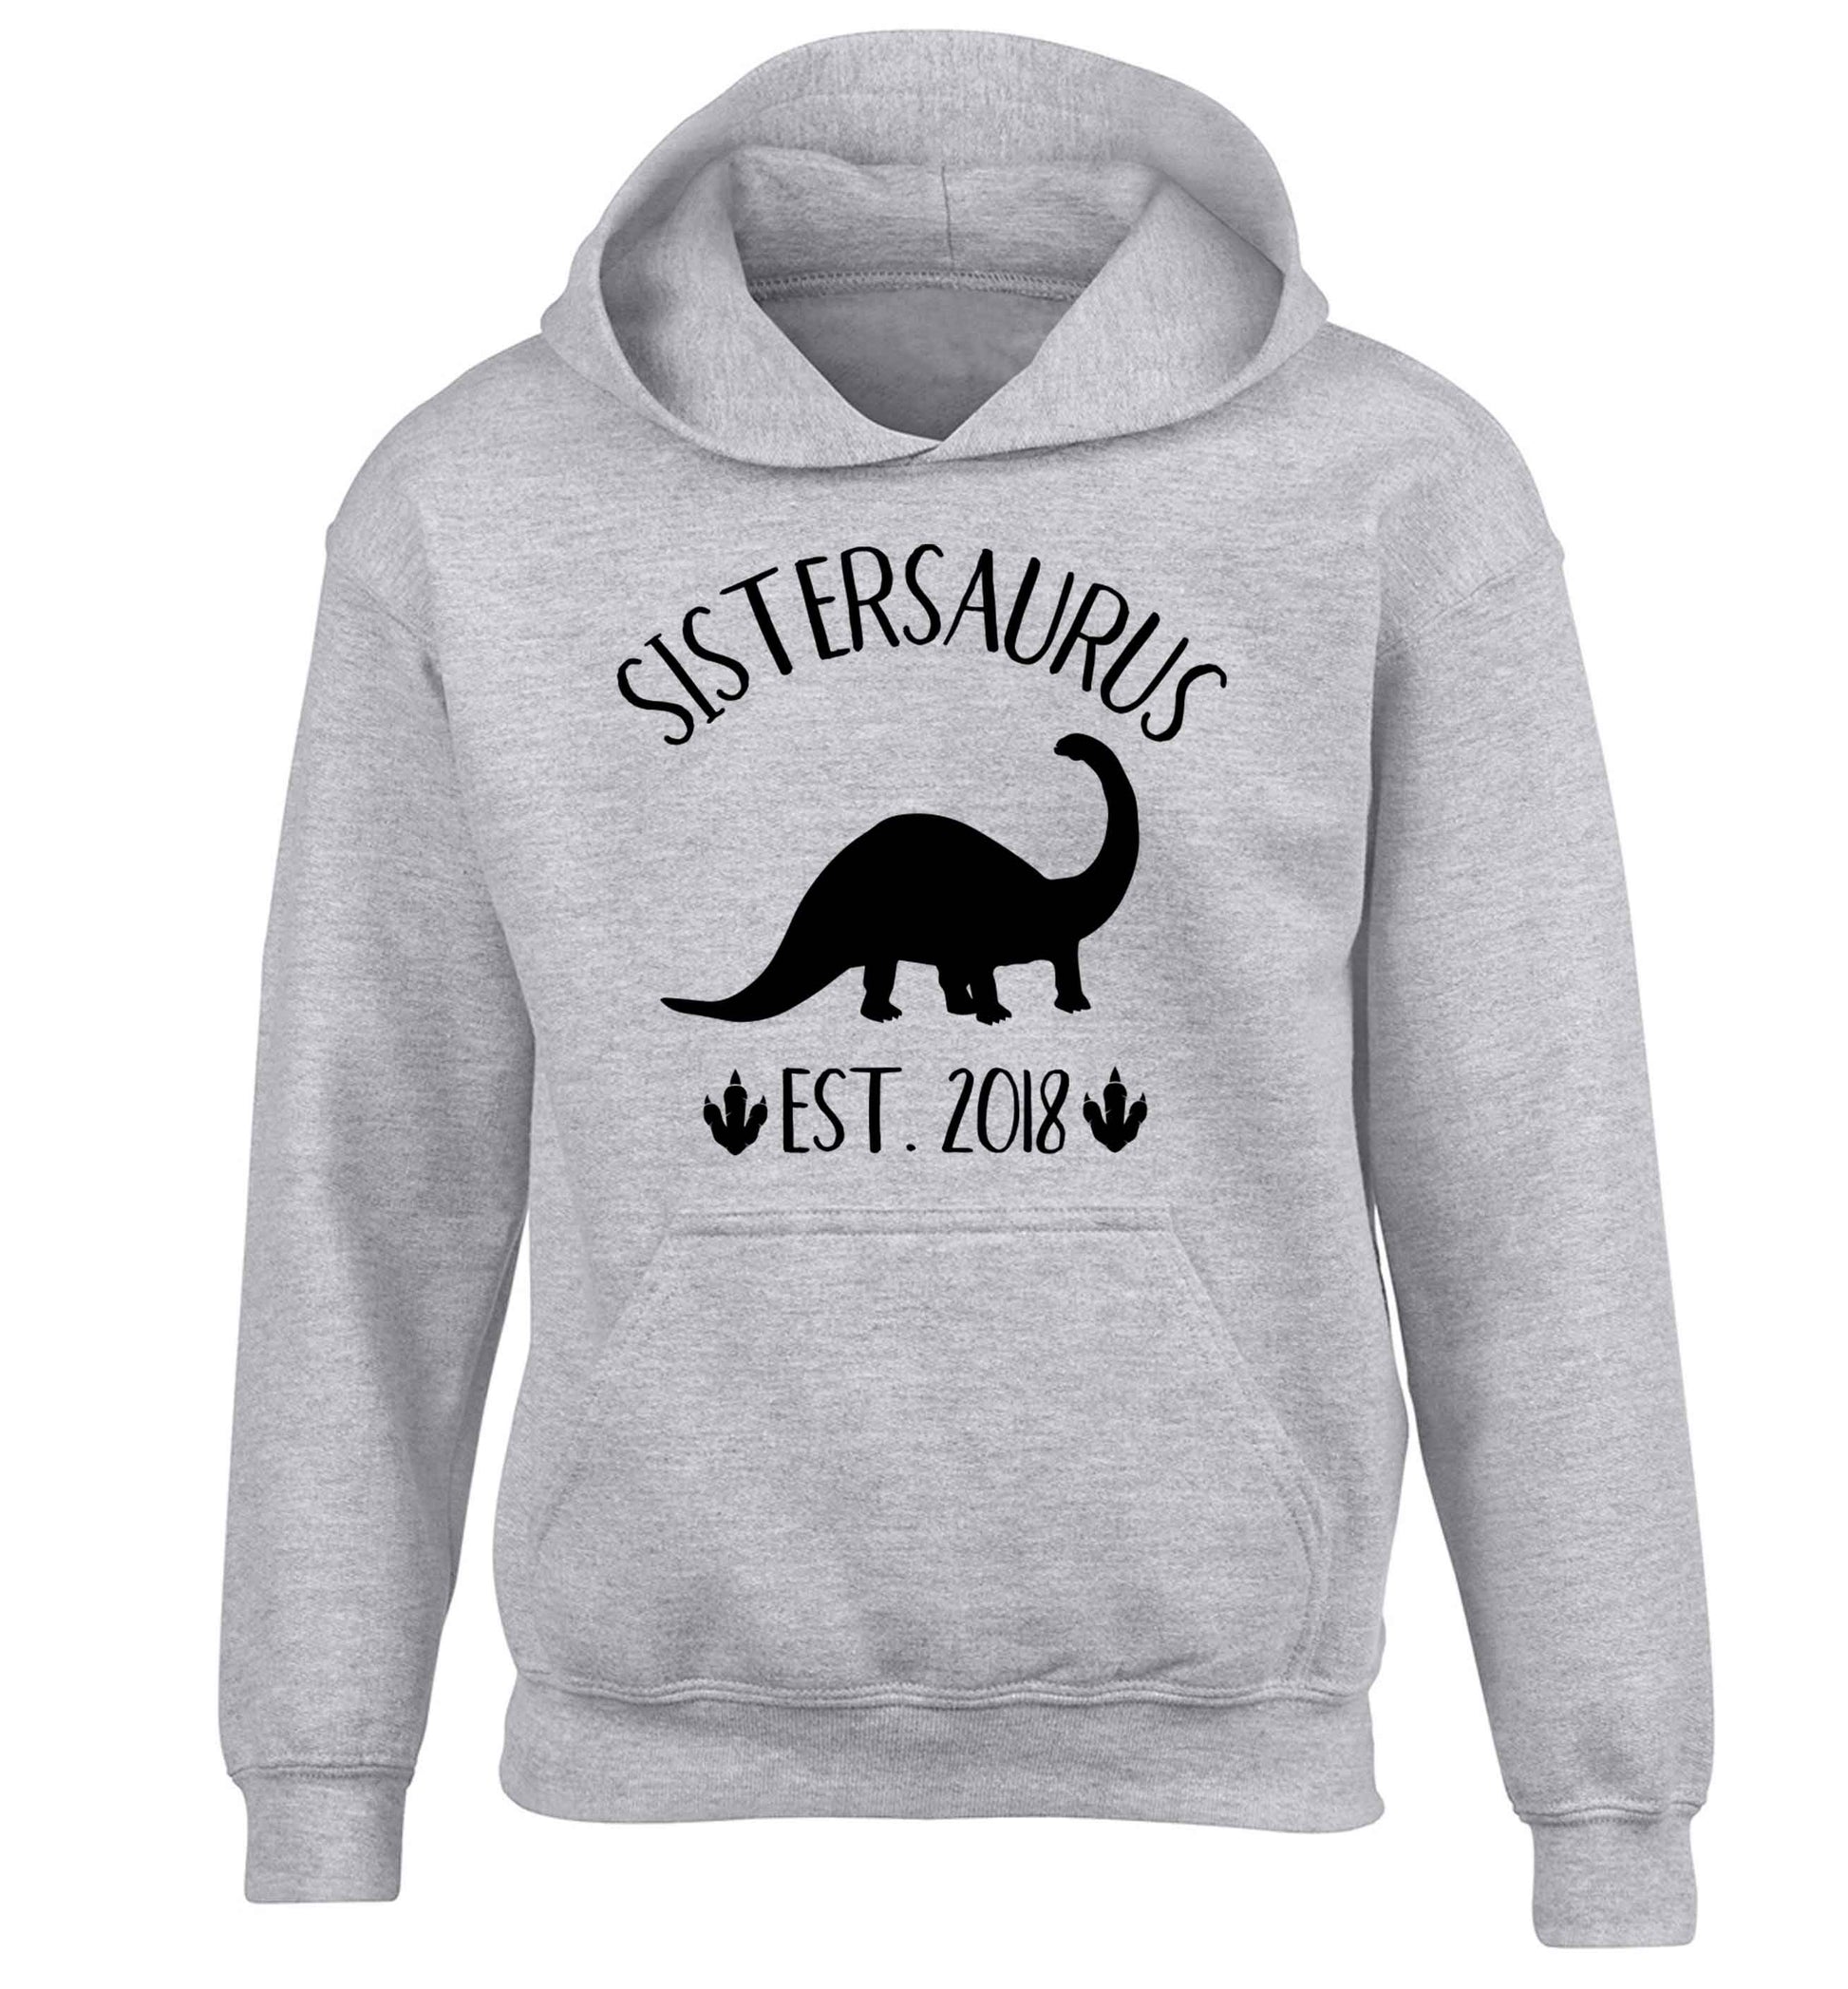 Personalised sistersaurus since (custom date) children's grey hoodie 12-13 Years